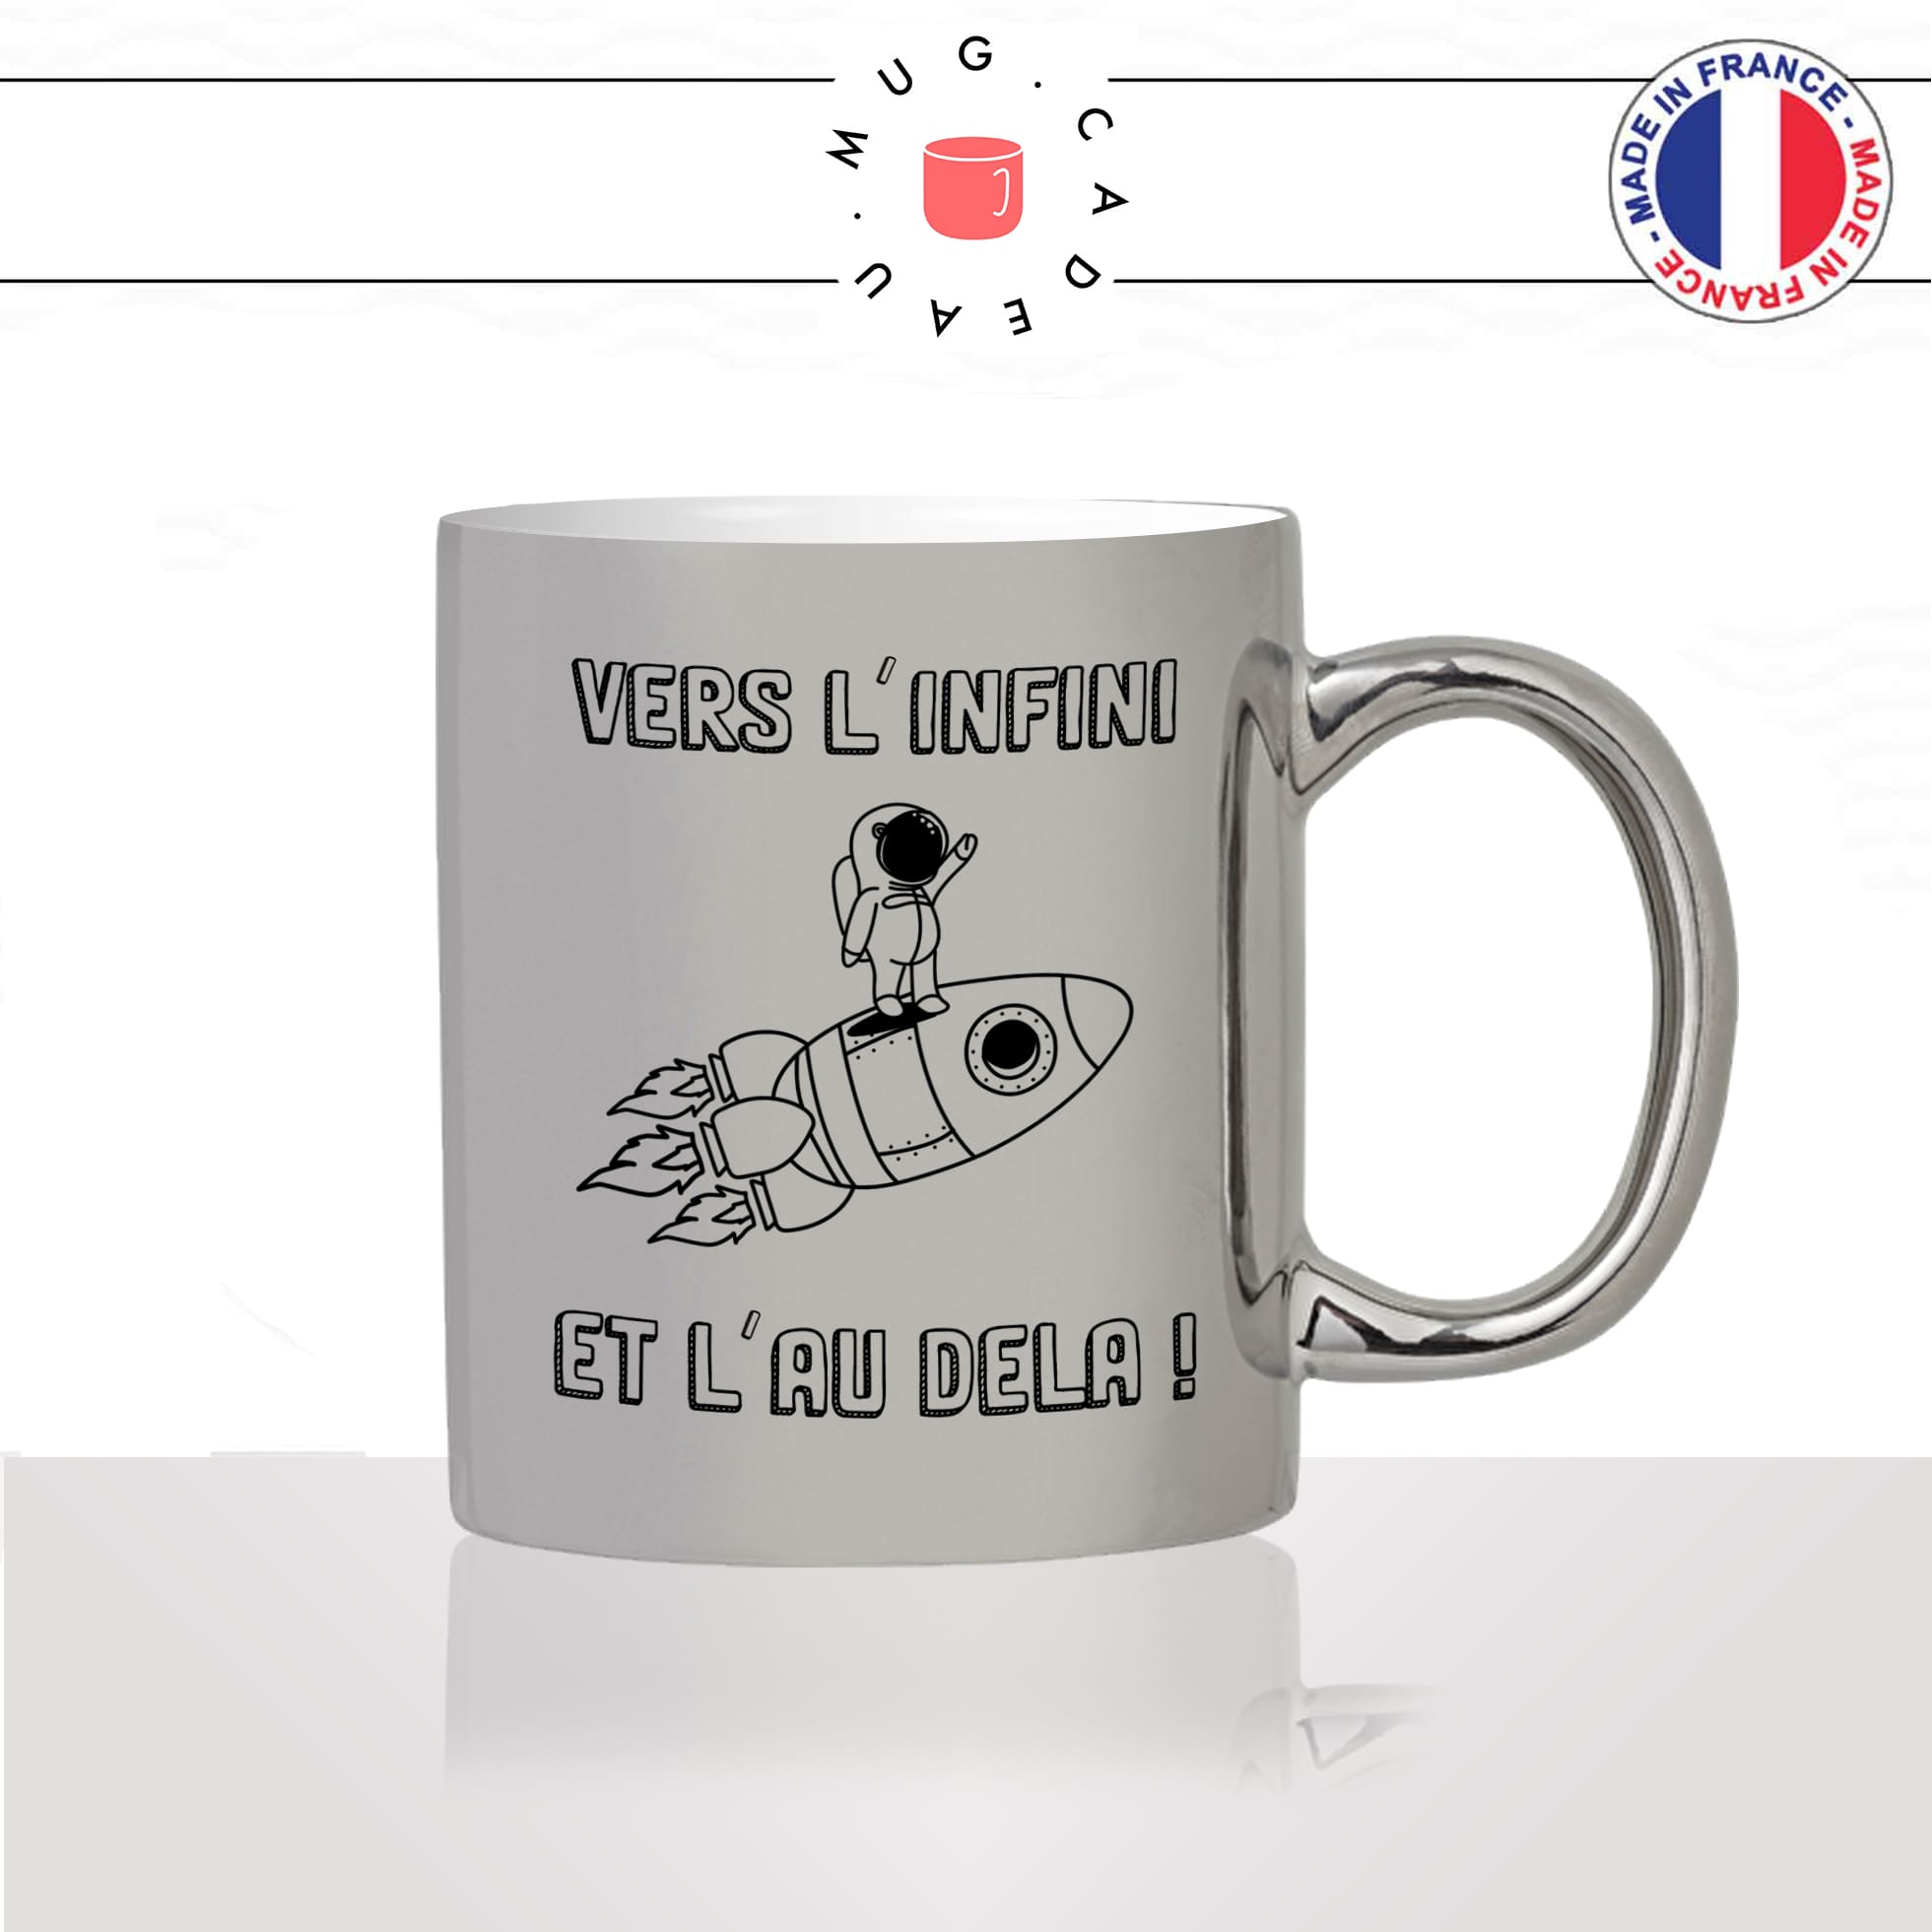 mug-tasse-argent-argenté-silver-astronaute-fusée-espace-vers-linfini-et-lau-dela-elon-musc-mignon-humour-idée-cadeau-fun-cool-café-thé2